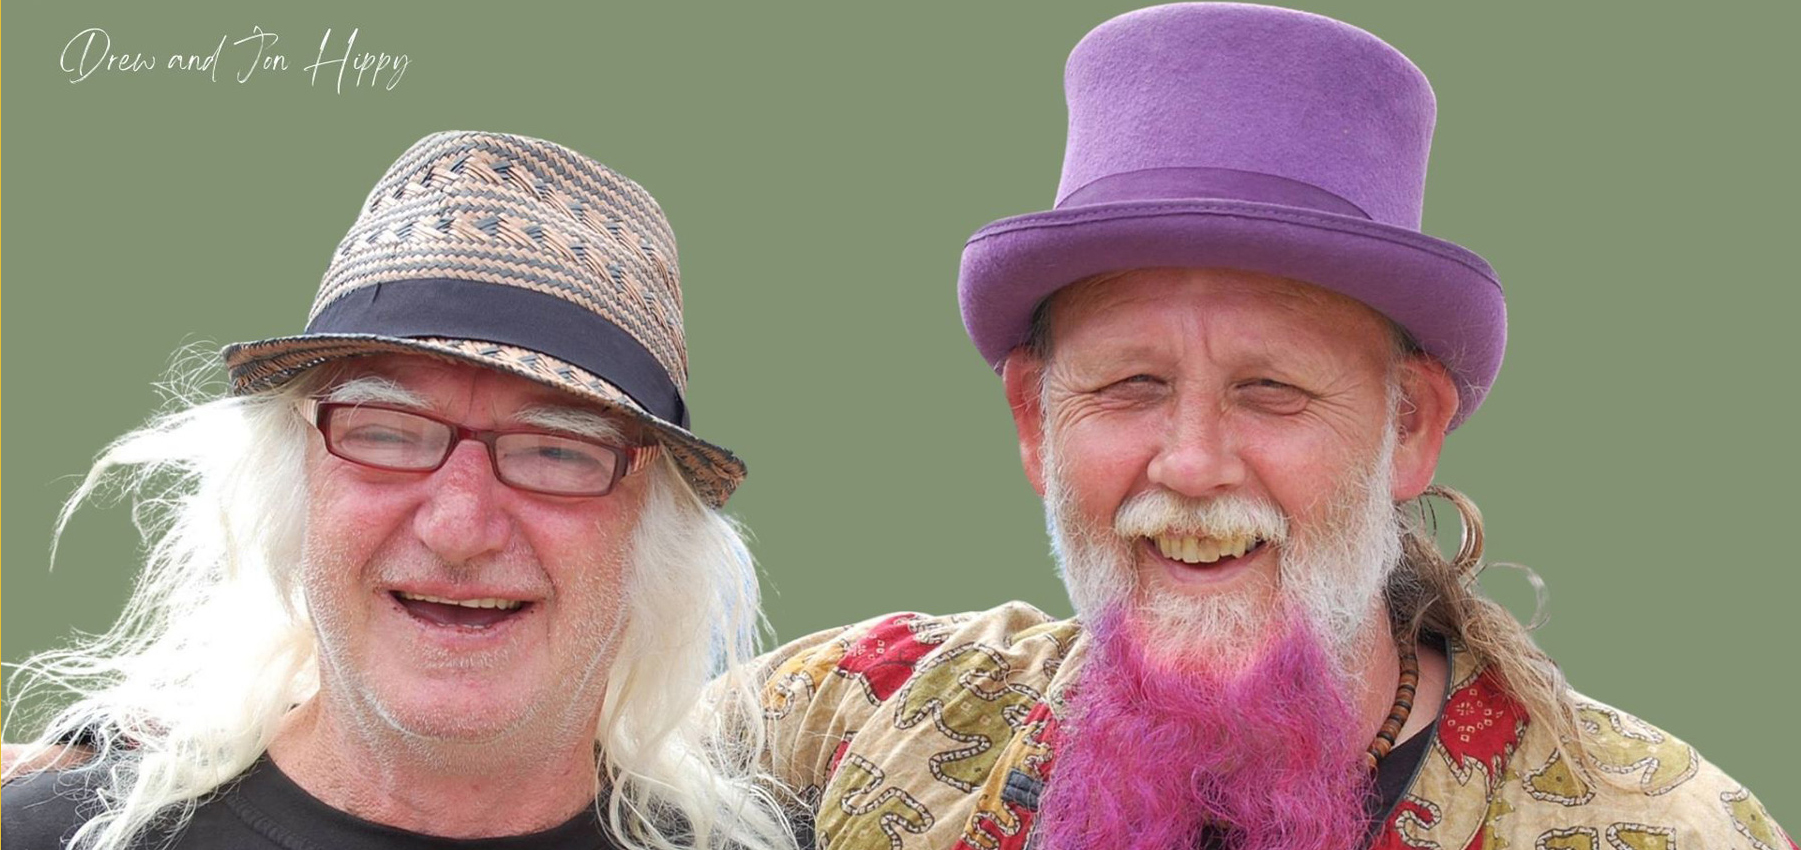 Drew and John Hippy: photo by John Knighton